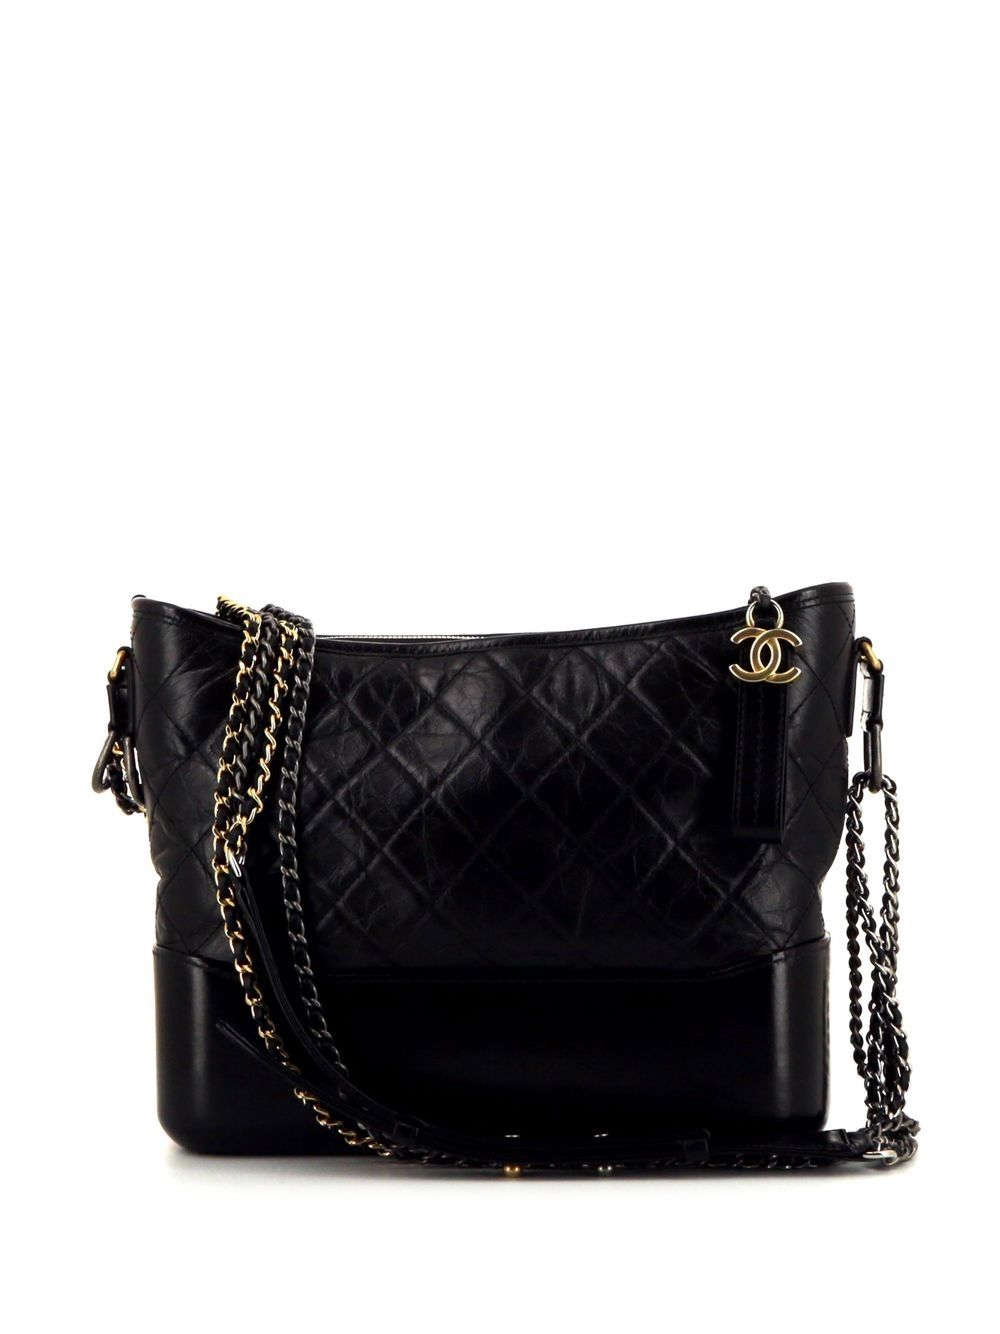 Chanel "The Gabrielle" Bag